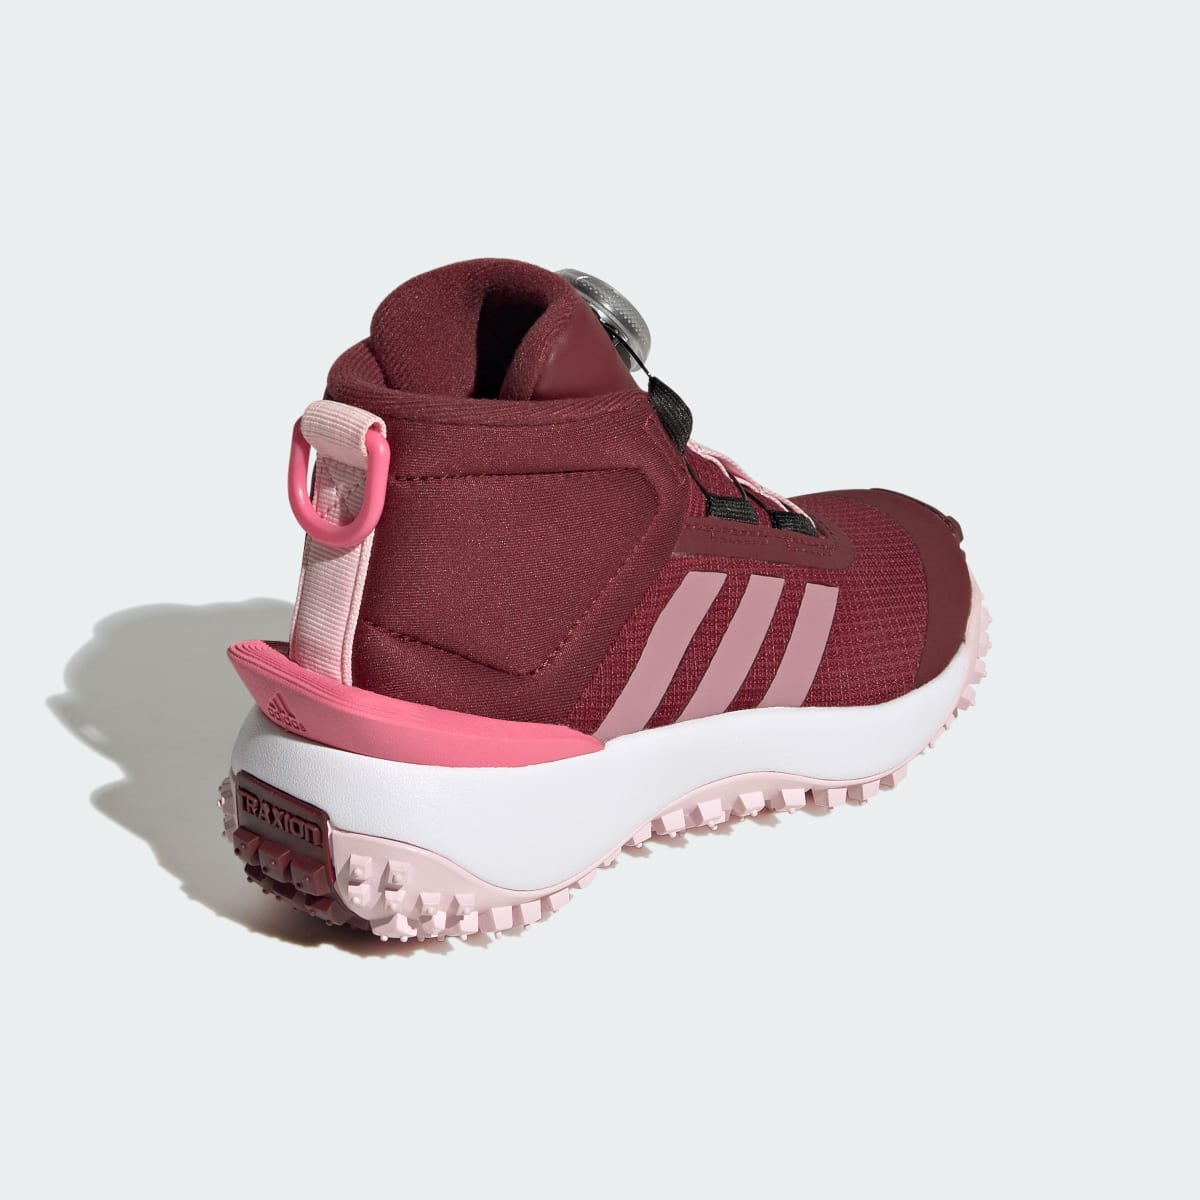 Adidas Fortatrail Kids Schuh. 6